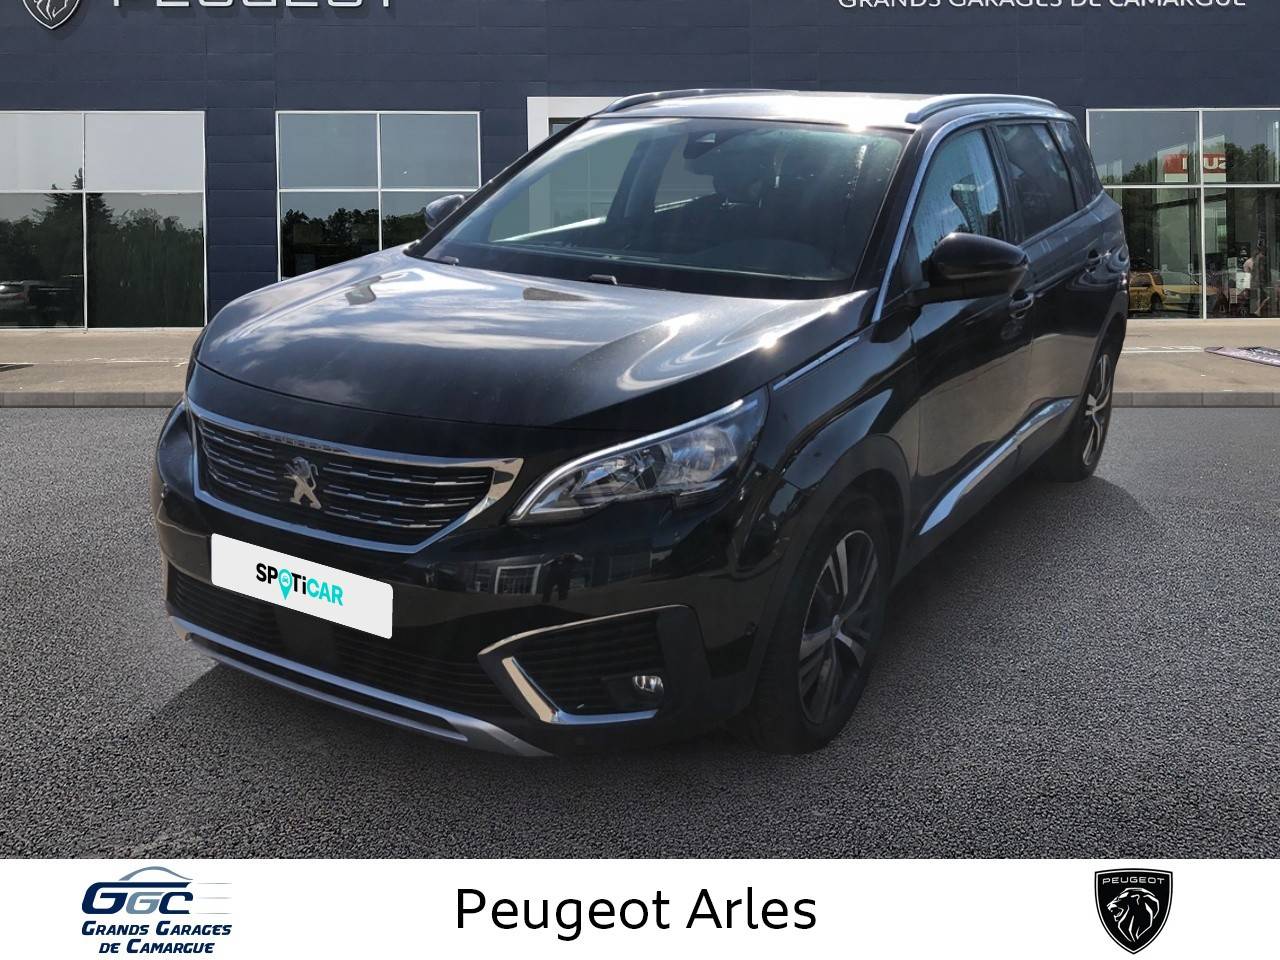 PEUGEOT 5008 | 5008 PureTech 130ch S&S EAT8 occasion - Peugeot Arles